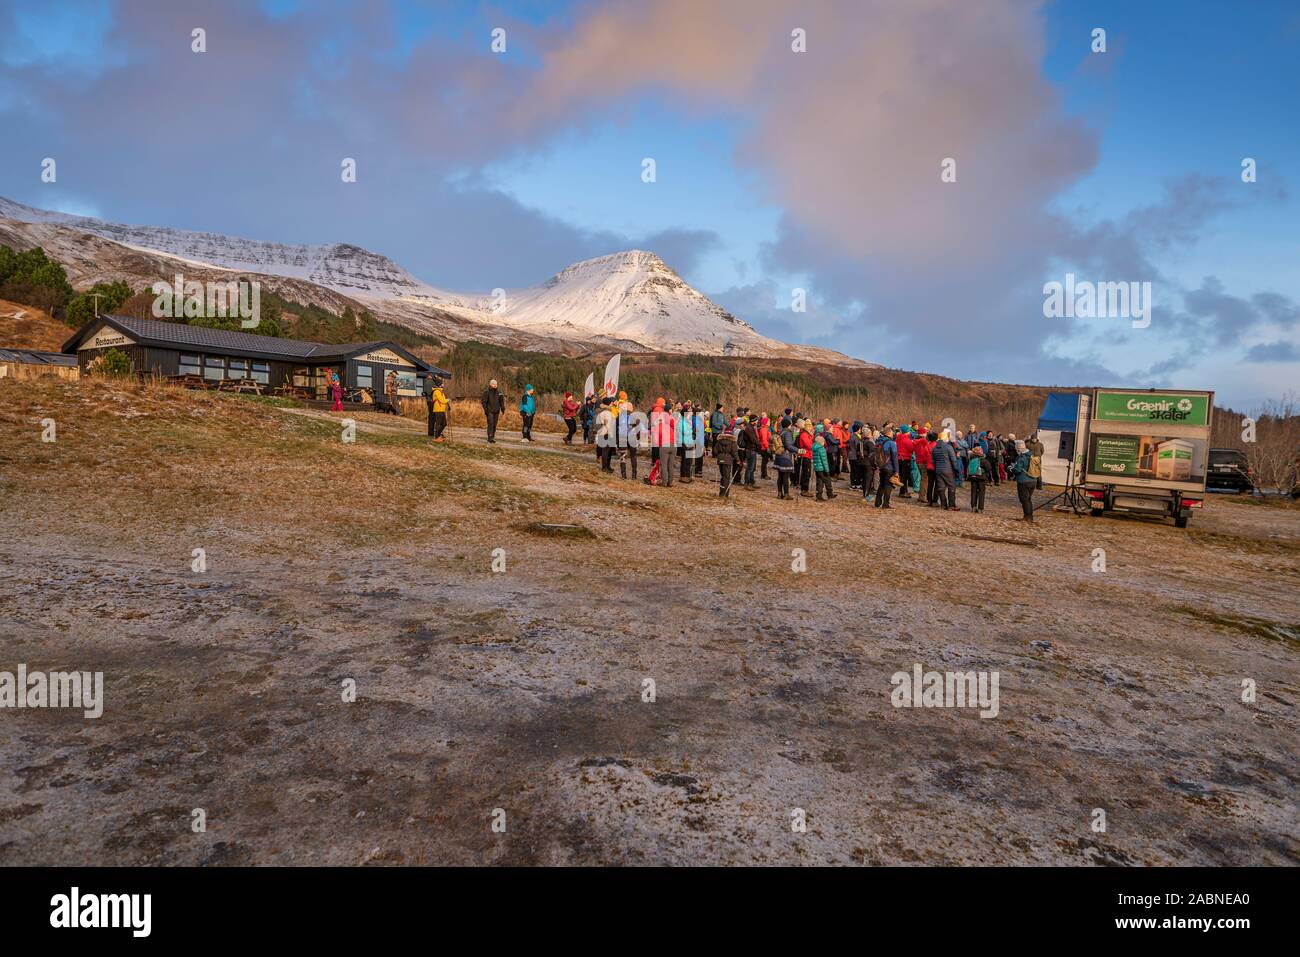 People gathering prior to climbing Mt Esja, Reykjavik, Iceland Stock Photo